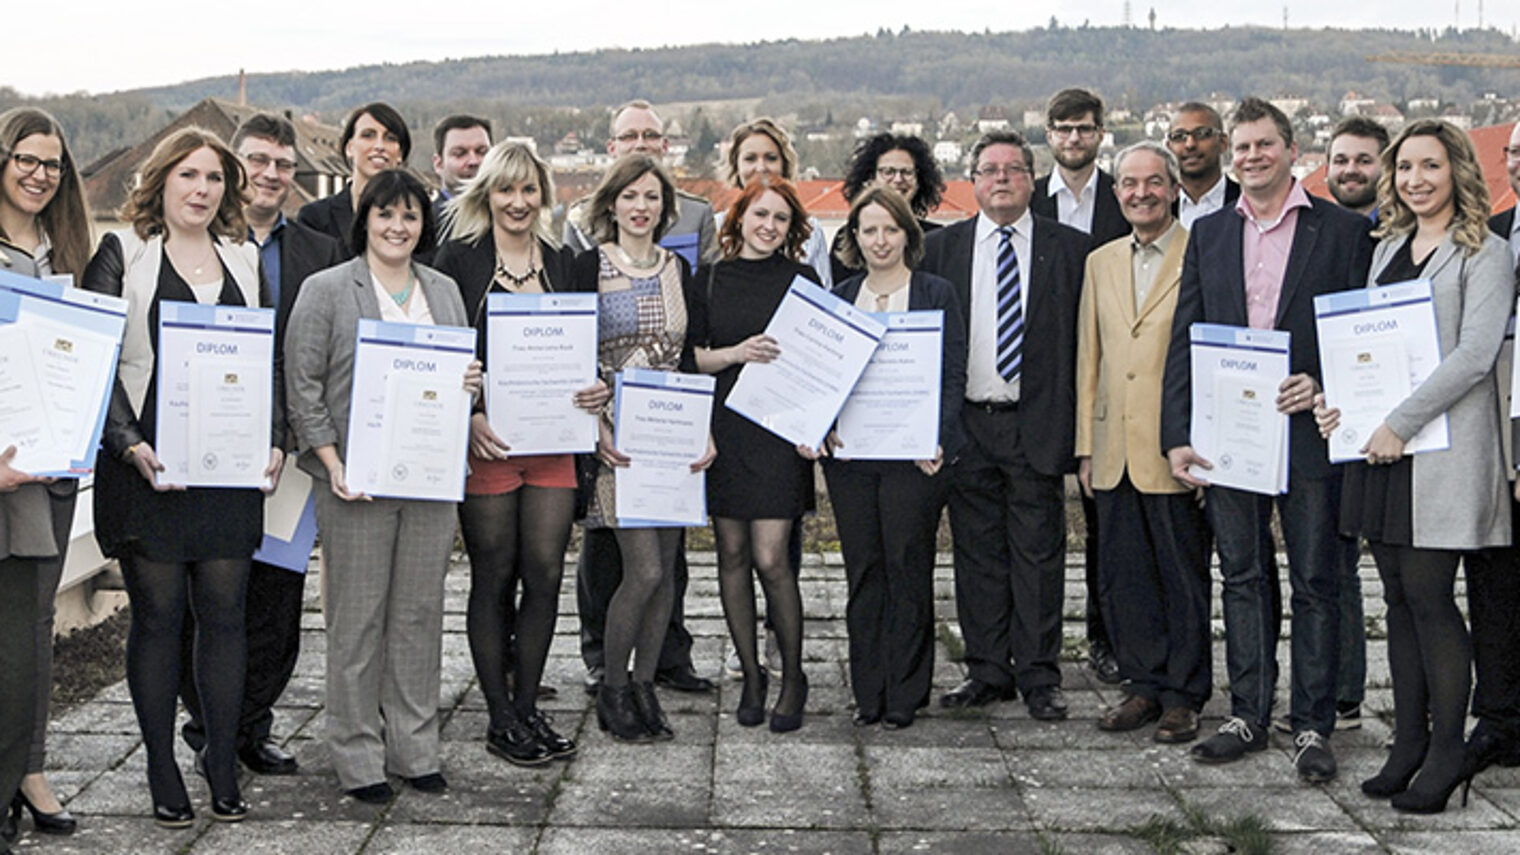 Erfolgreiche Absolventen: die Meisterpreisträger, die bei der Abschlussfeier an der Akademie für Unternehmensführung geehrt wurden.